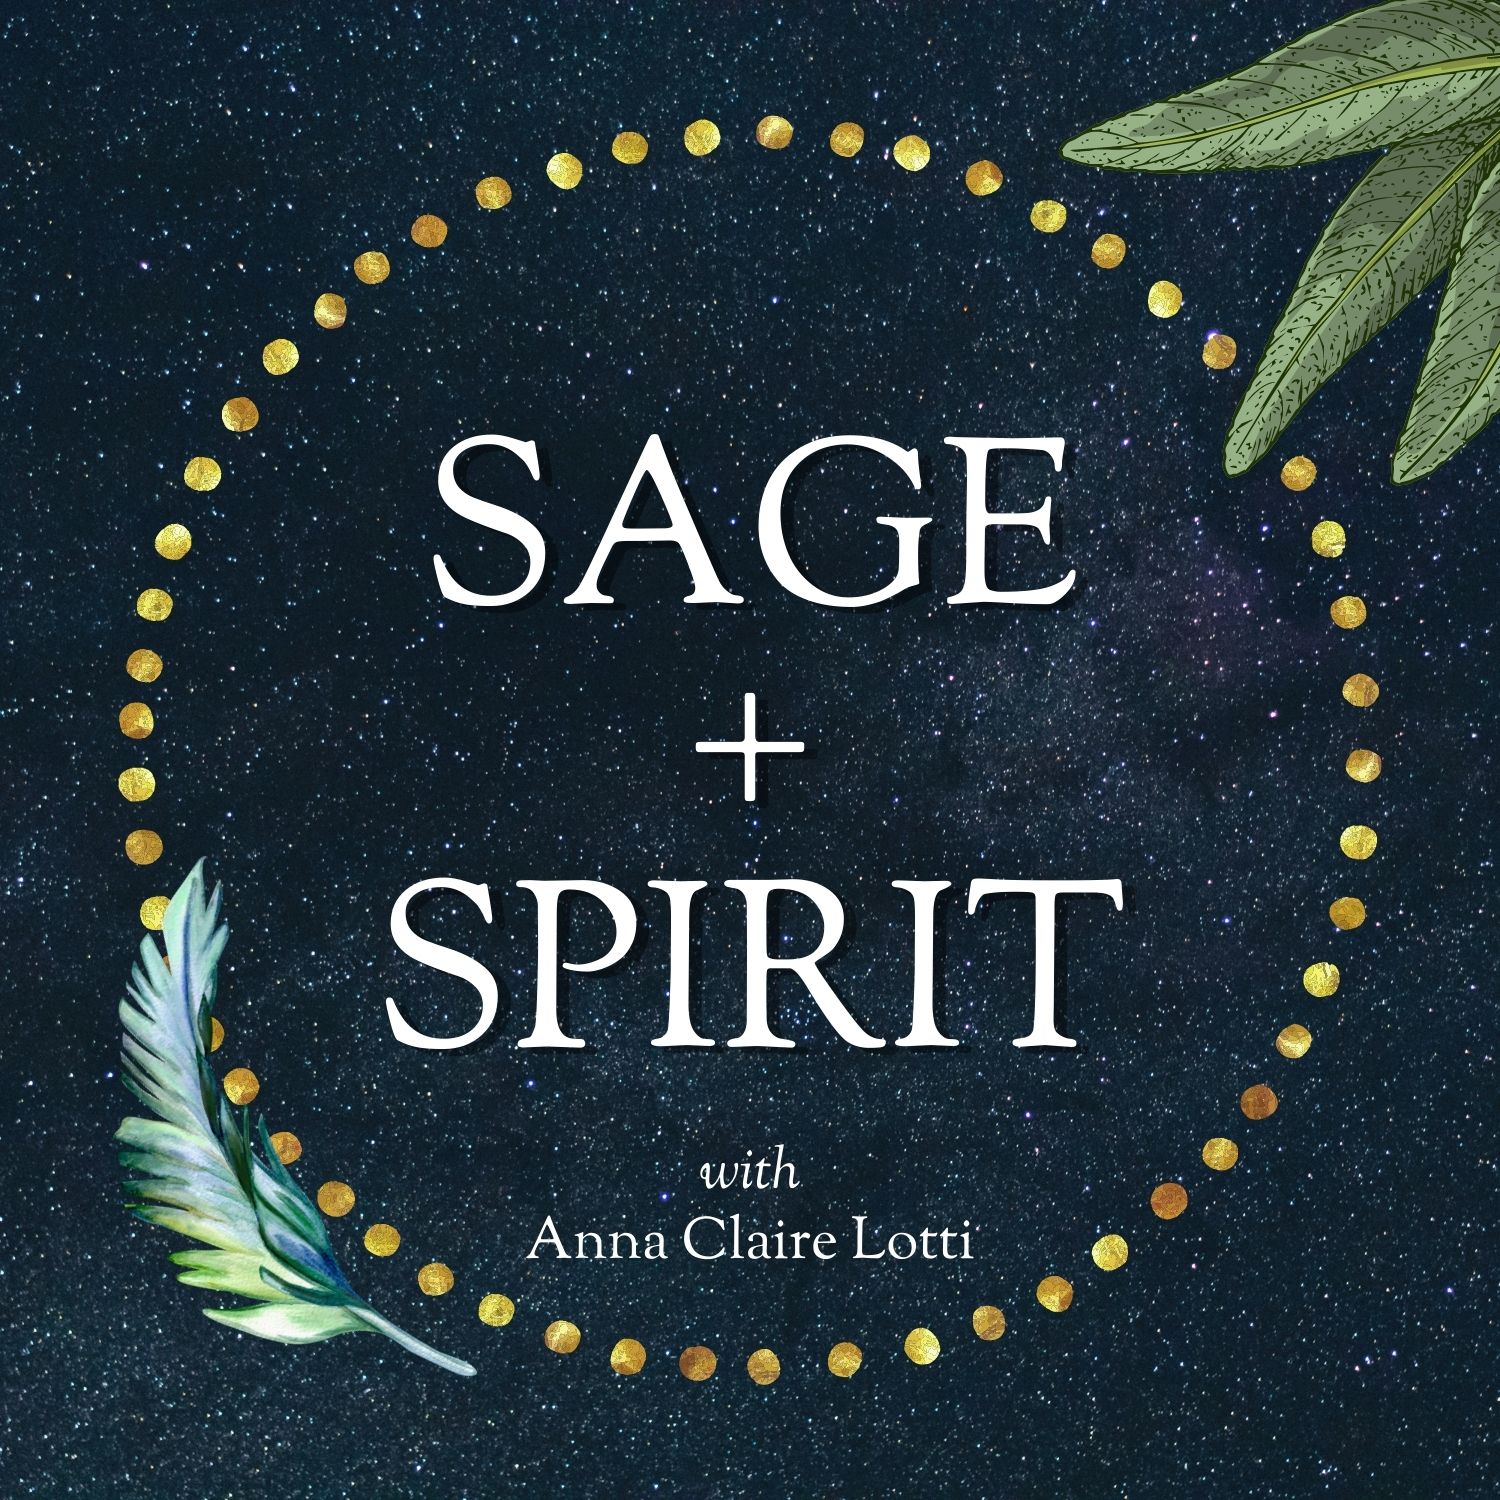 Sage and Spirit